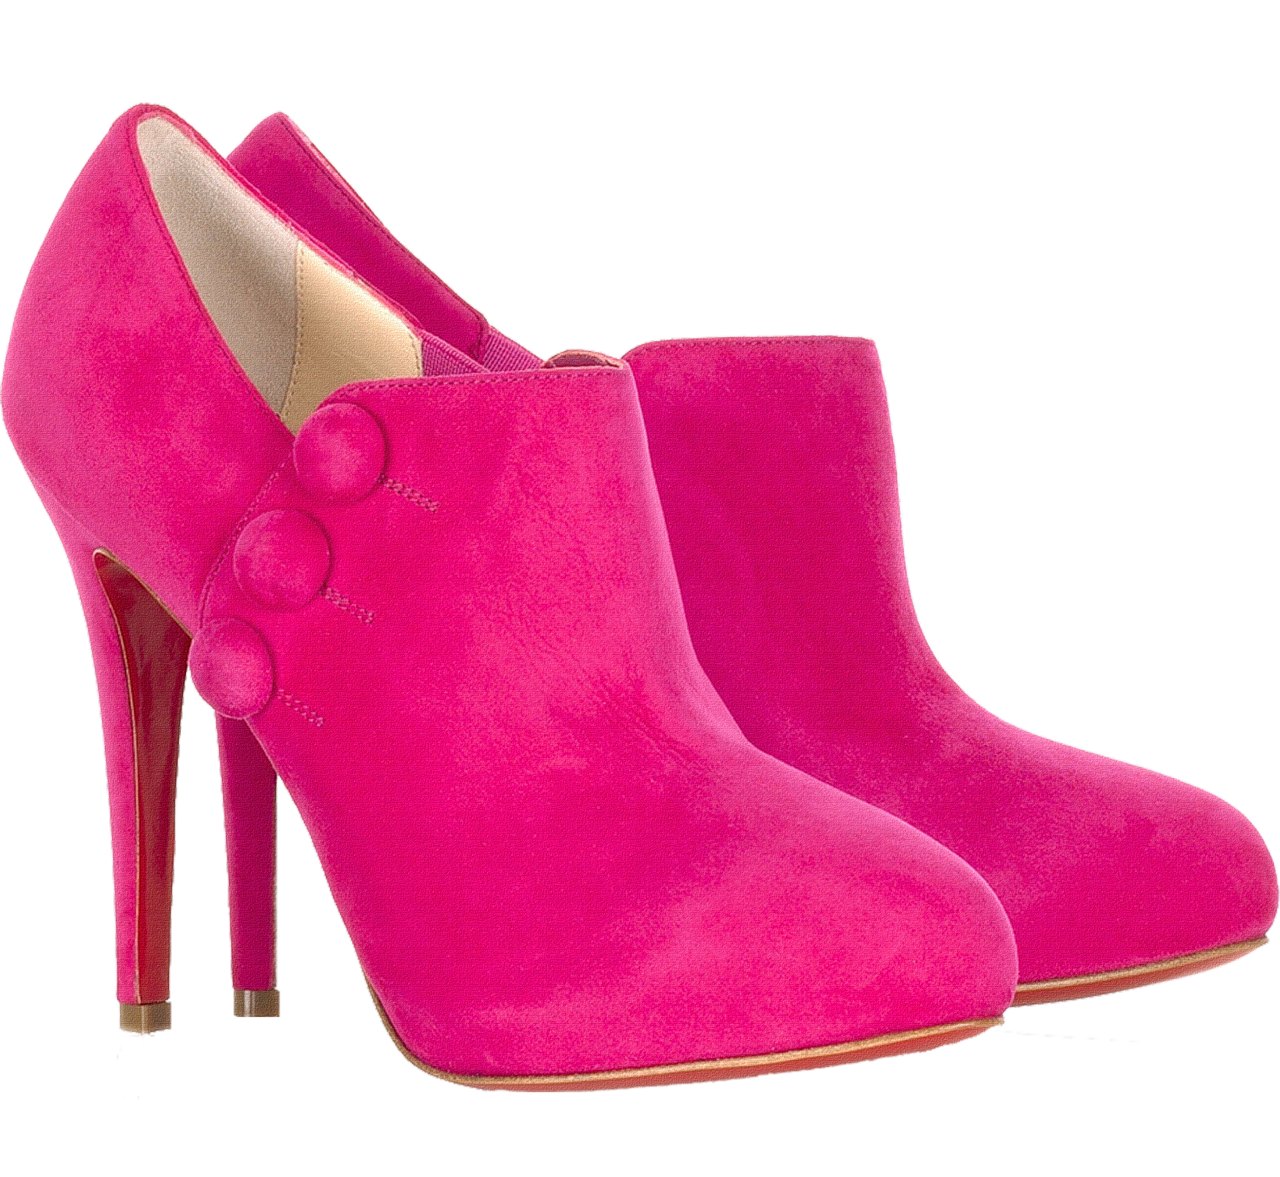 핑크 여성 신발